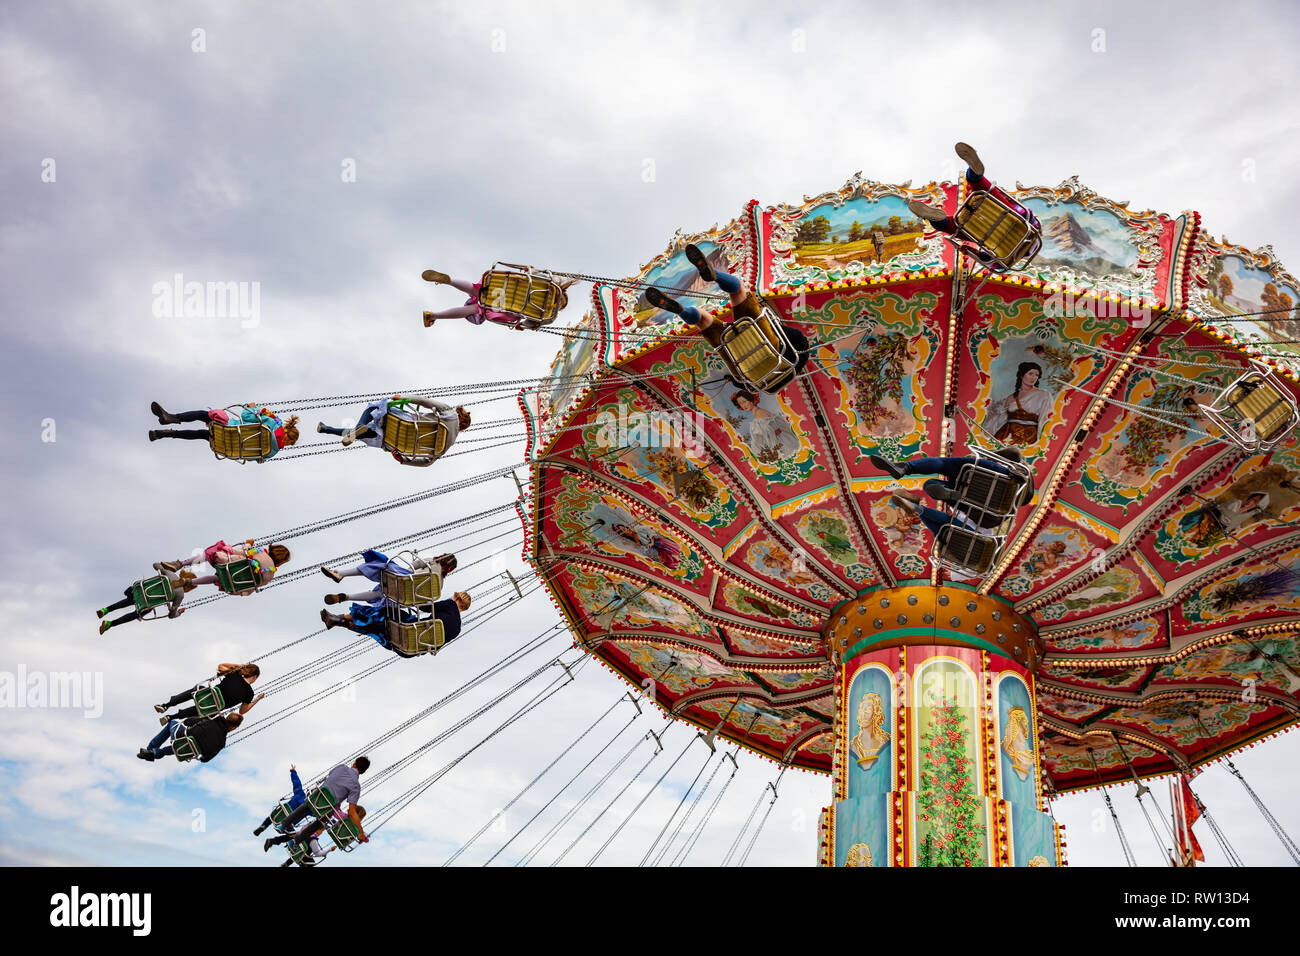 Le 7 octobre 2018. L'Oktoberfest de Munich, Allemagne, Carrousel, sur fond de ciel nuageux Banque D'Images